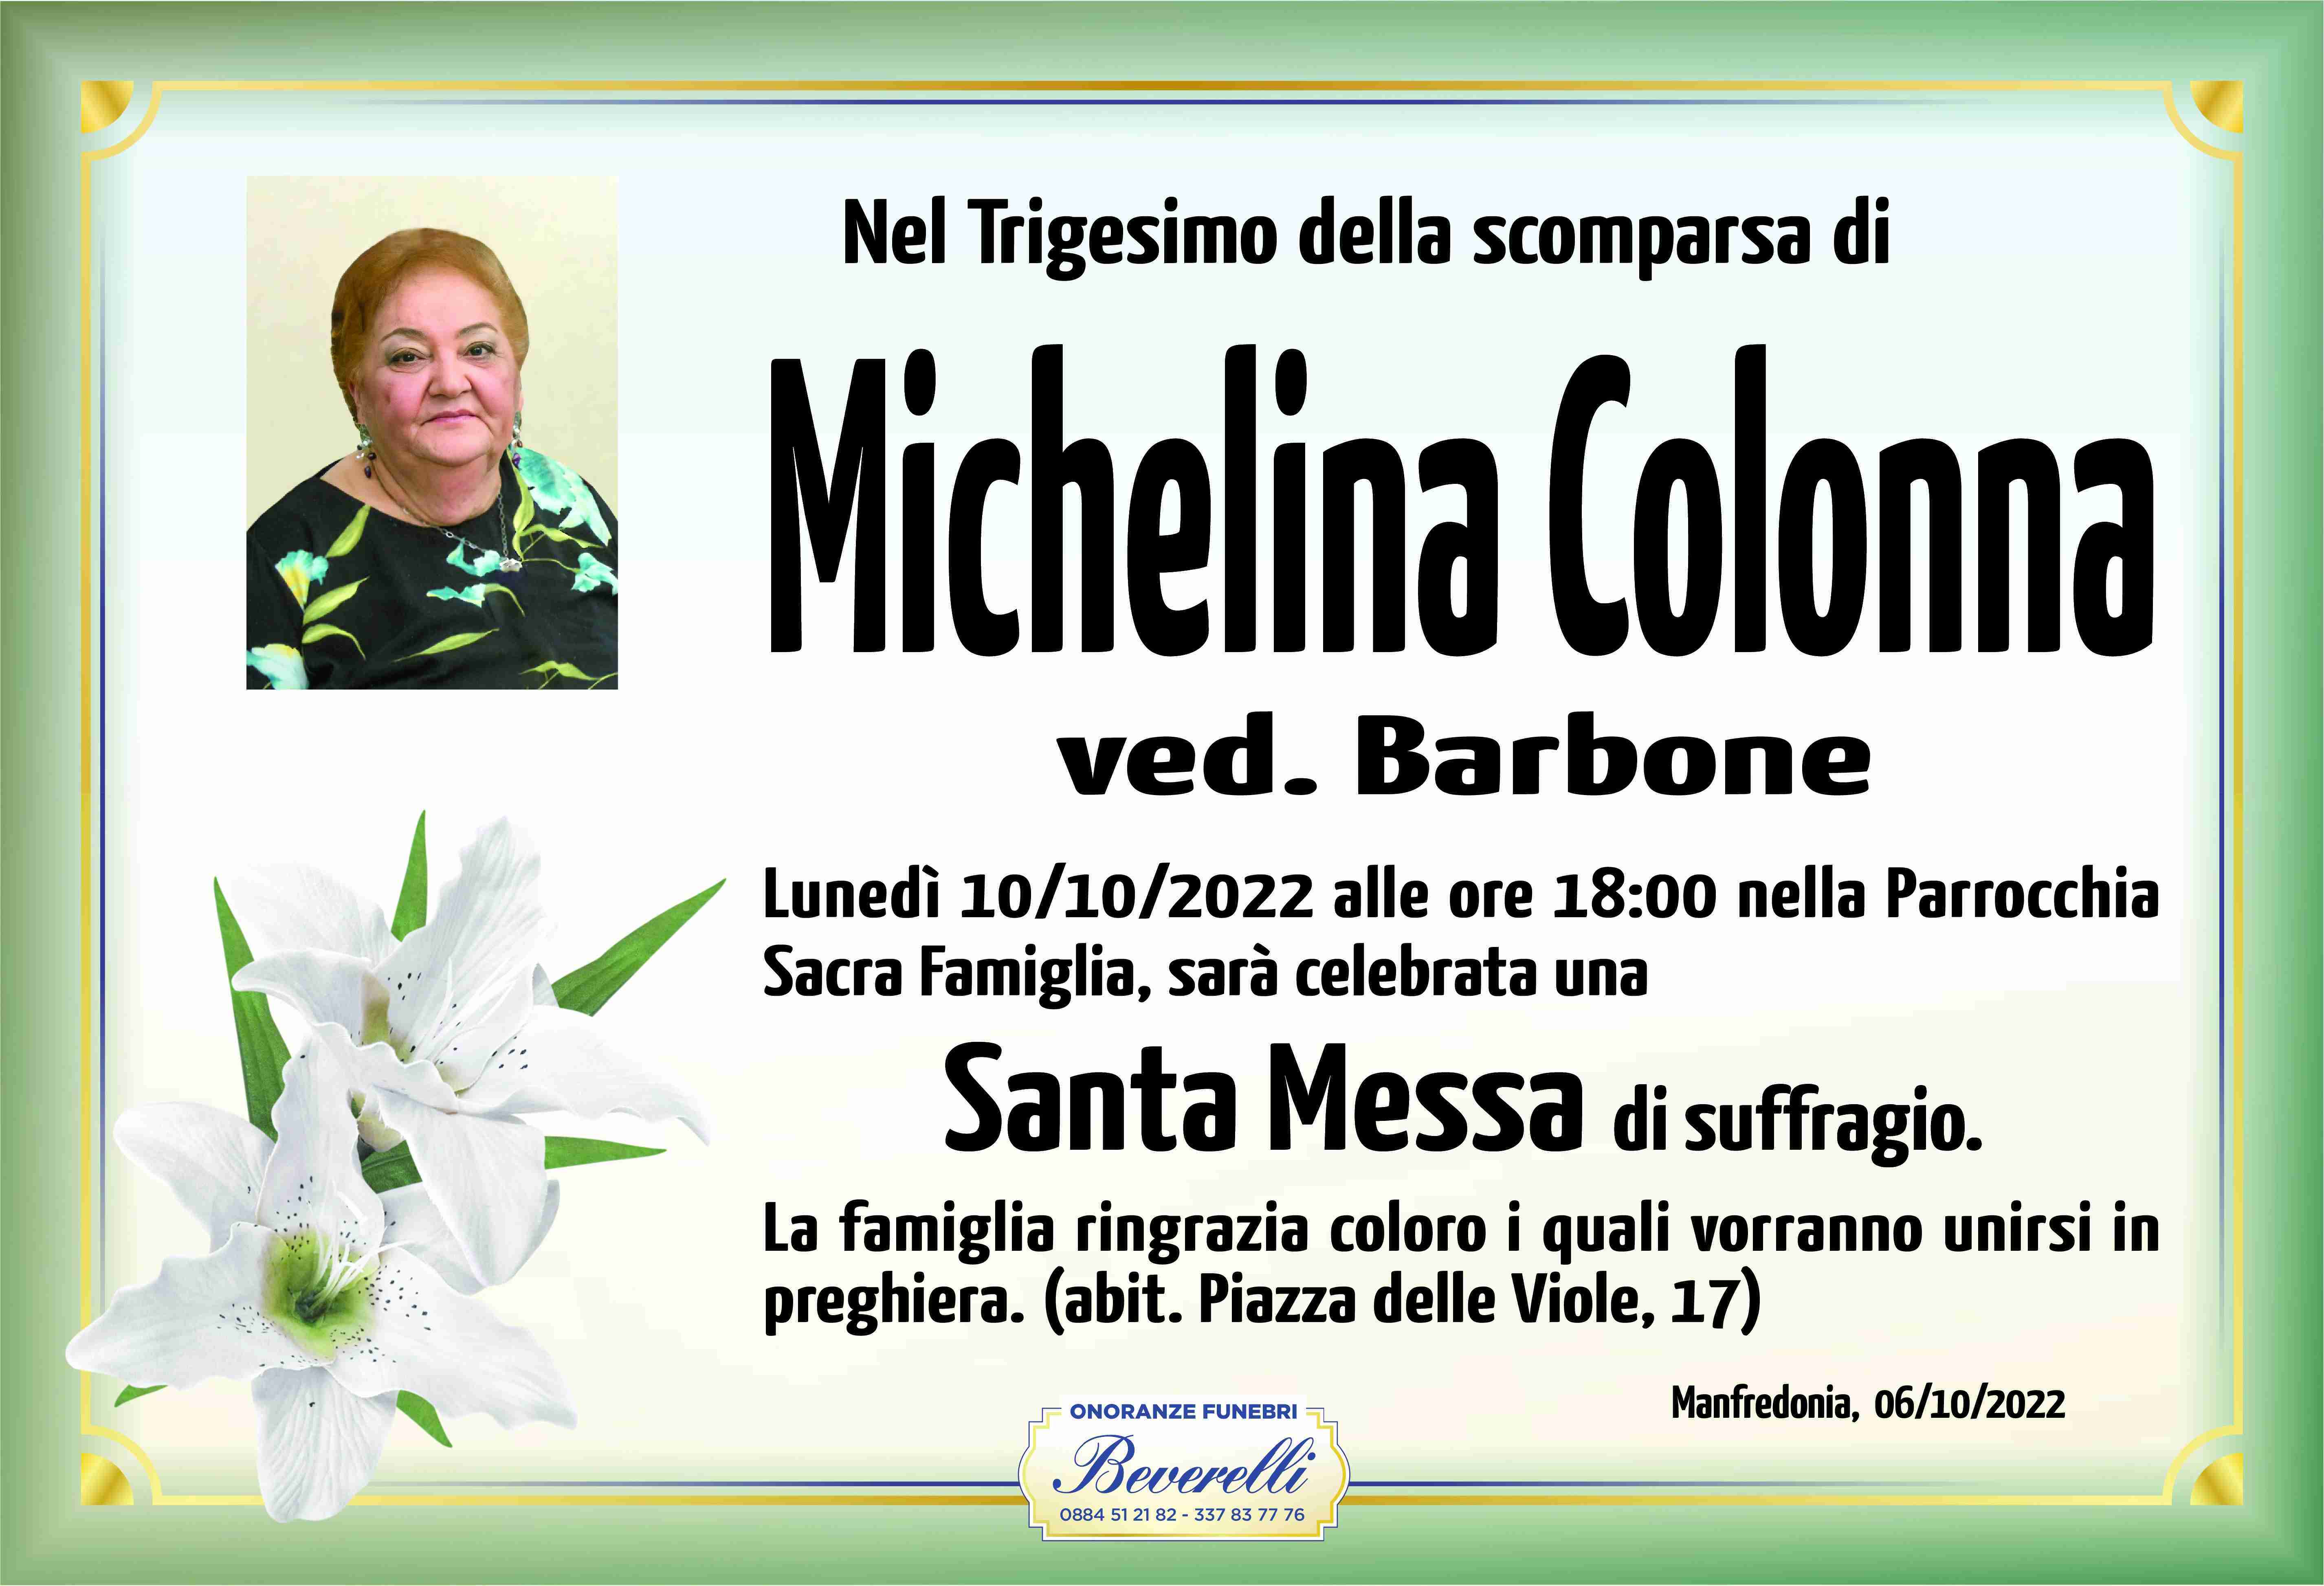 Michelina Colonna